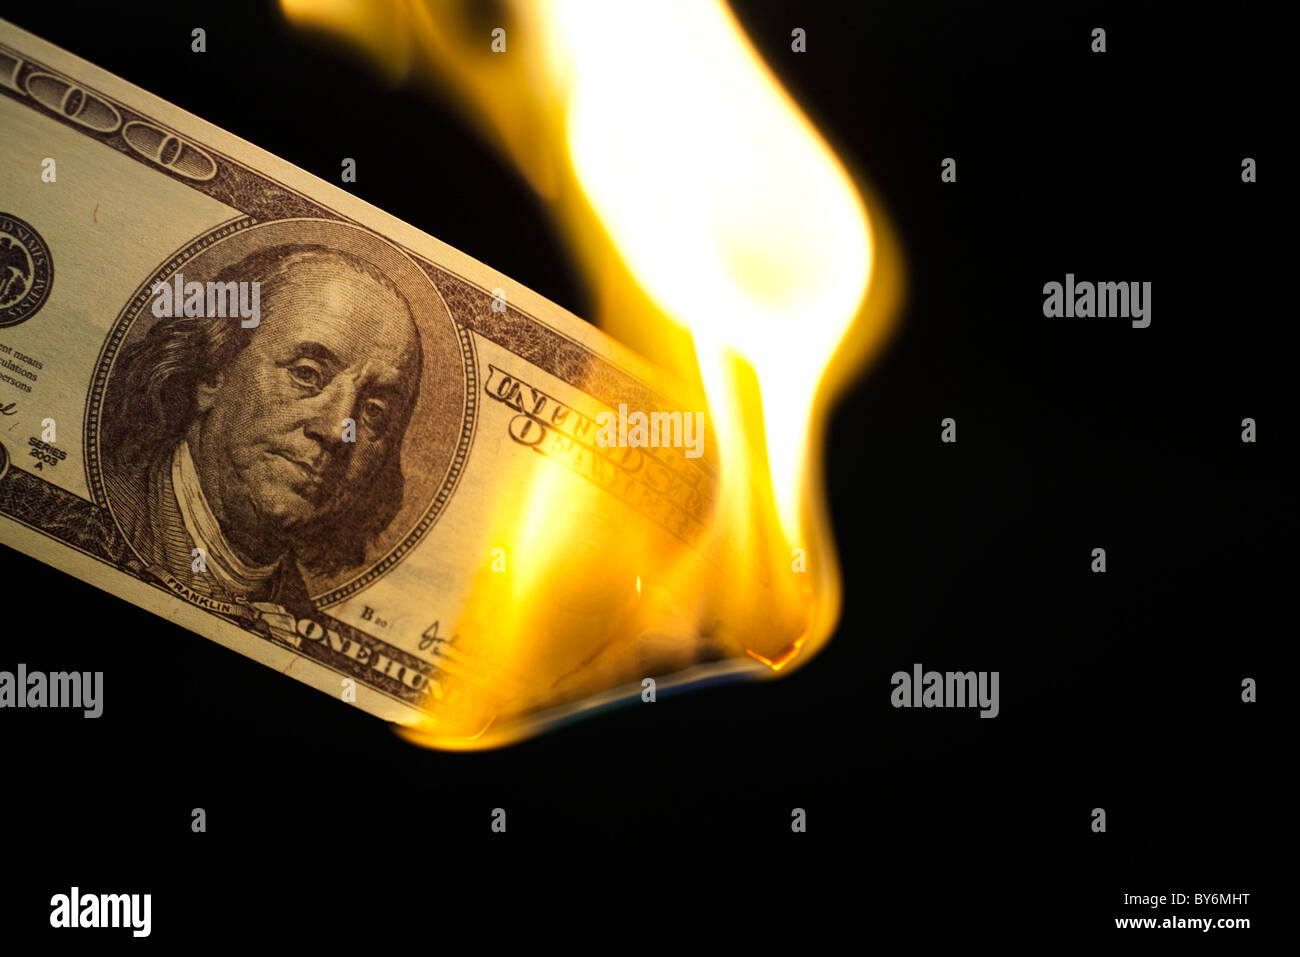 Image of one hundred bill burning on black background Stock Photo